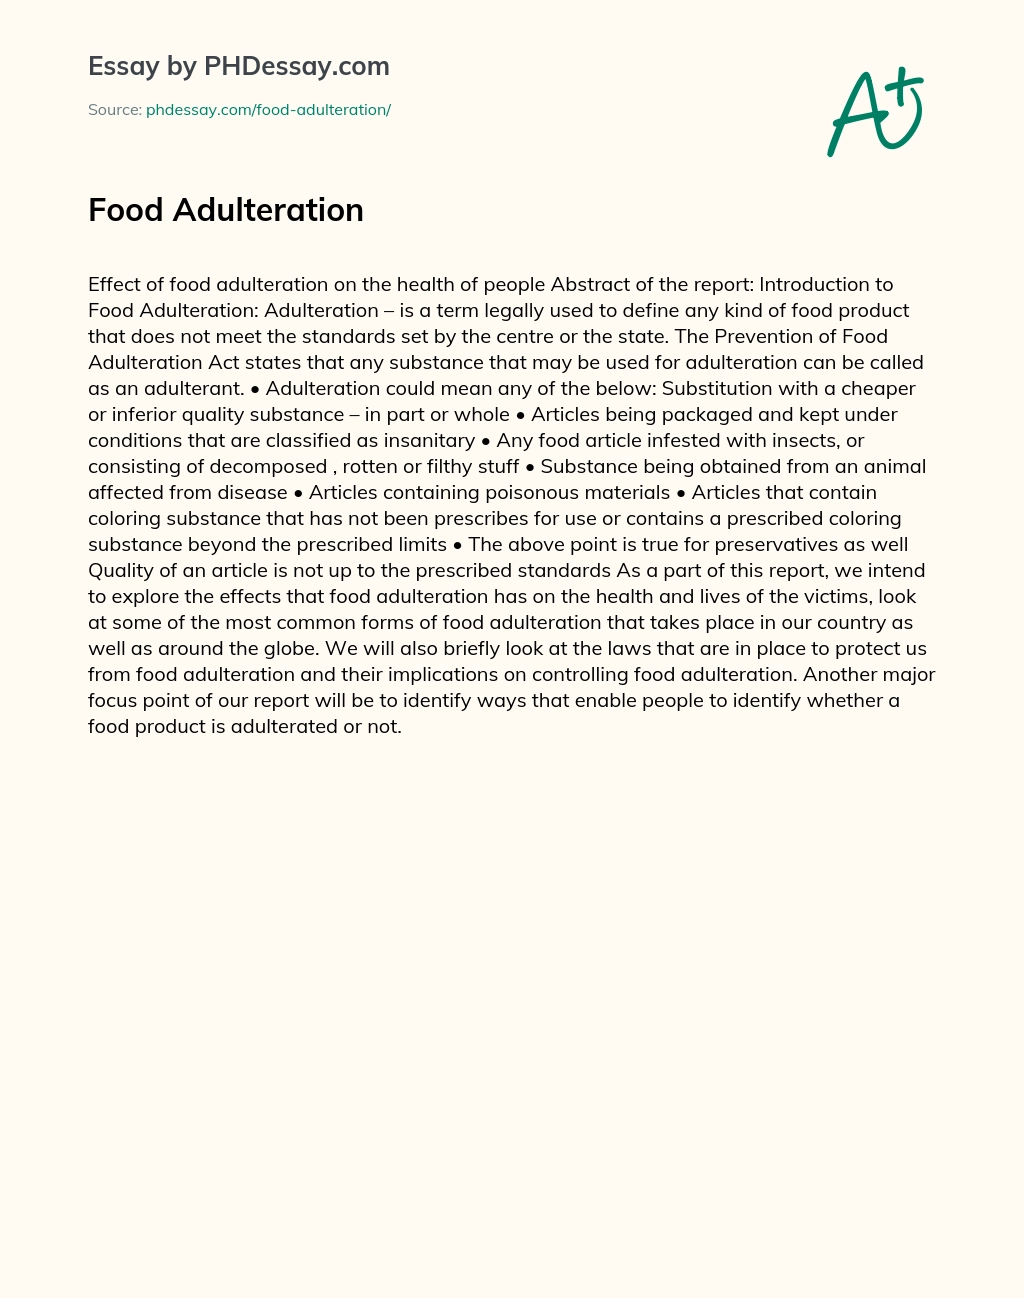 Food Adulteration essay